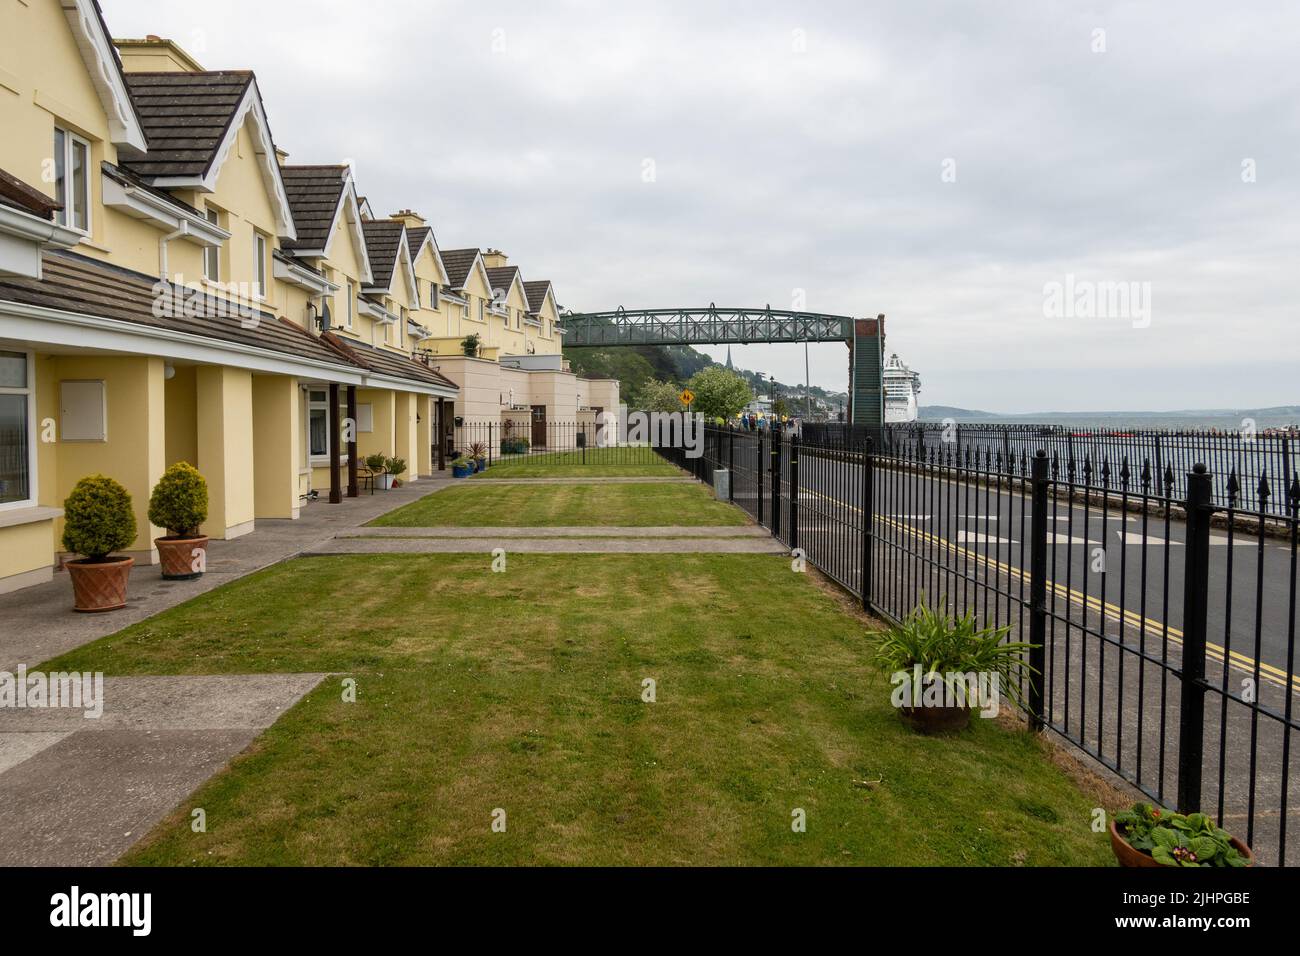 Cobh (Queenstown), Ireland Stock Photo